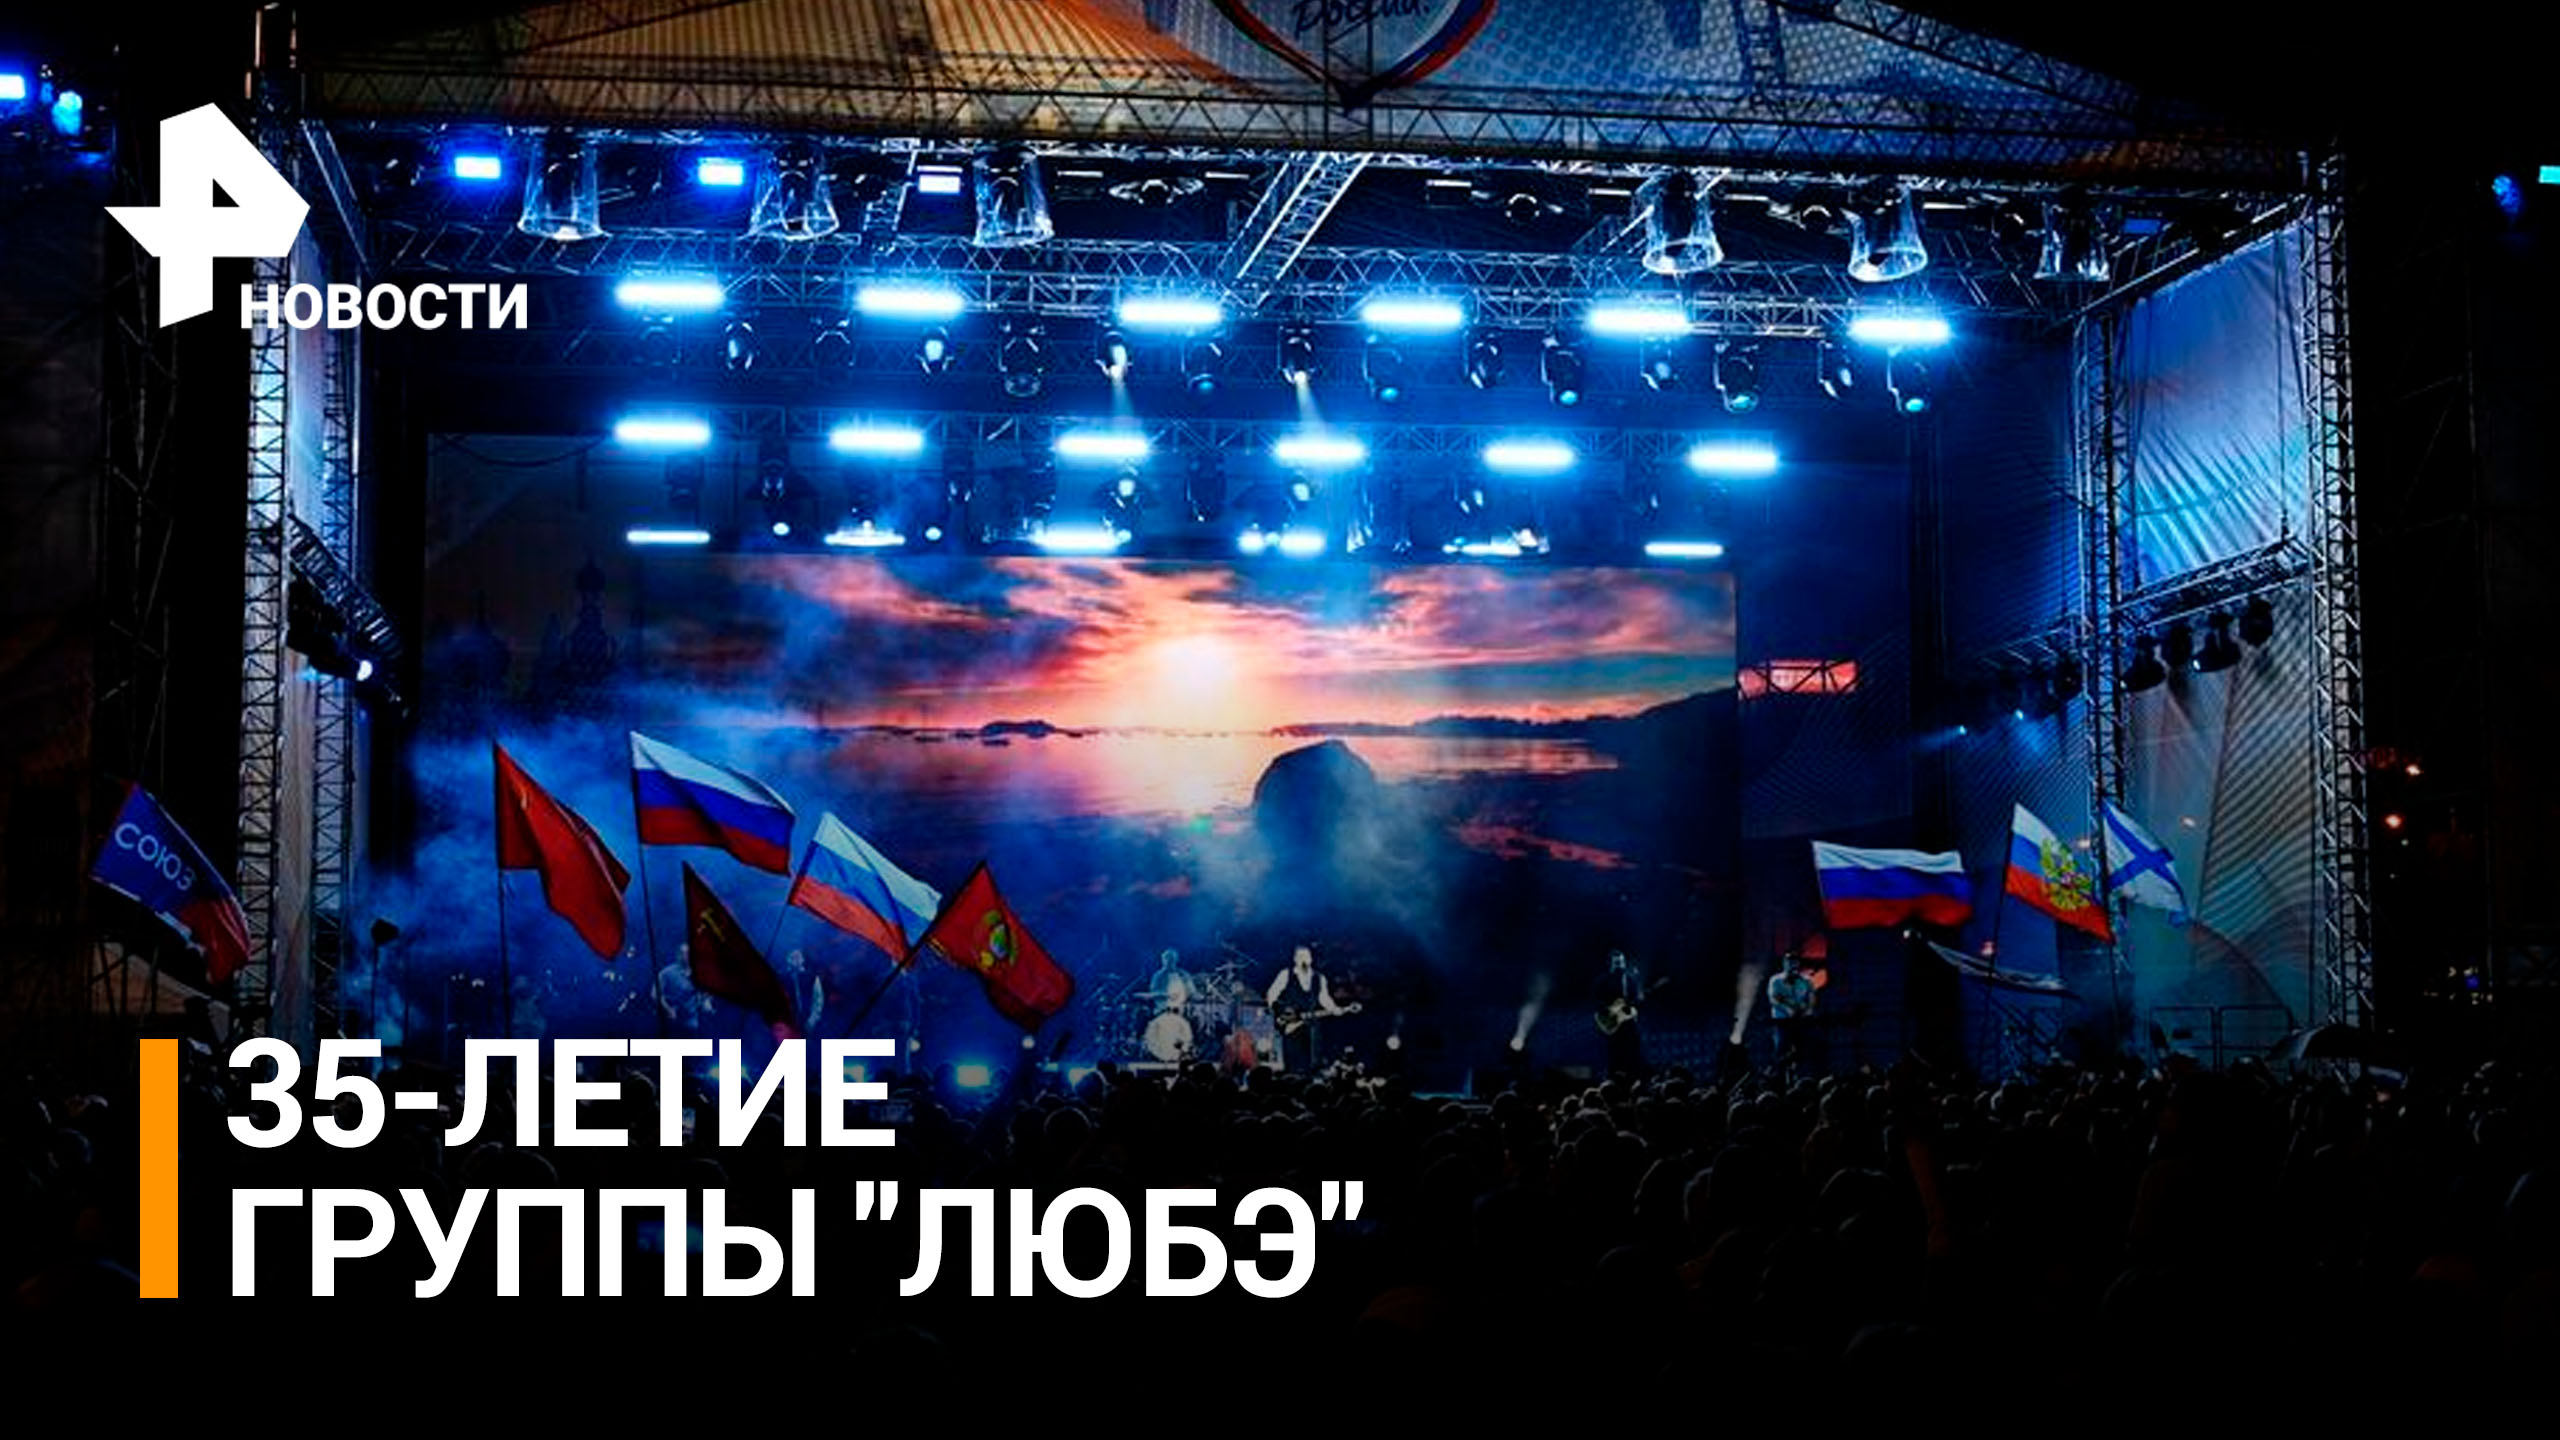 Группа "Любэ" отметит 35-летие творческой деятельности двумя концертами в Москве / РЕН Новости